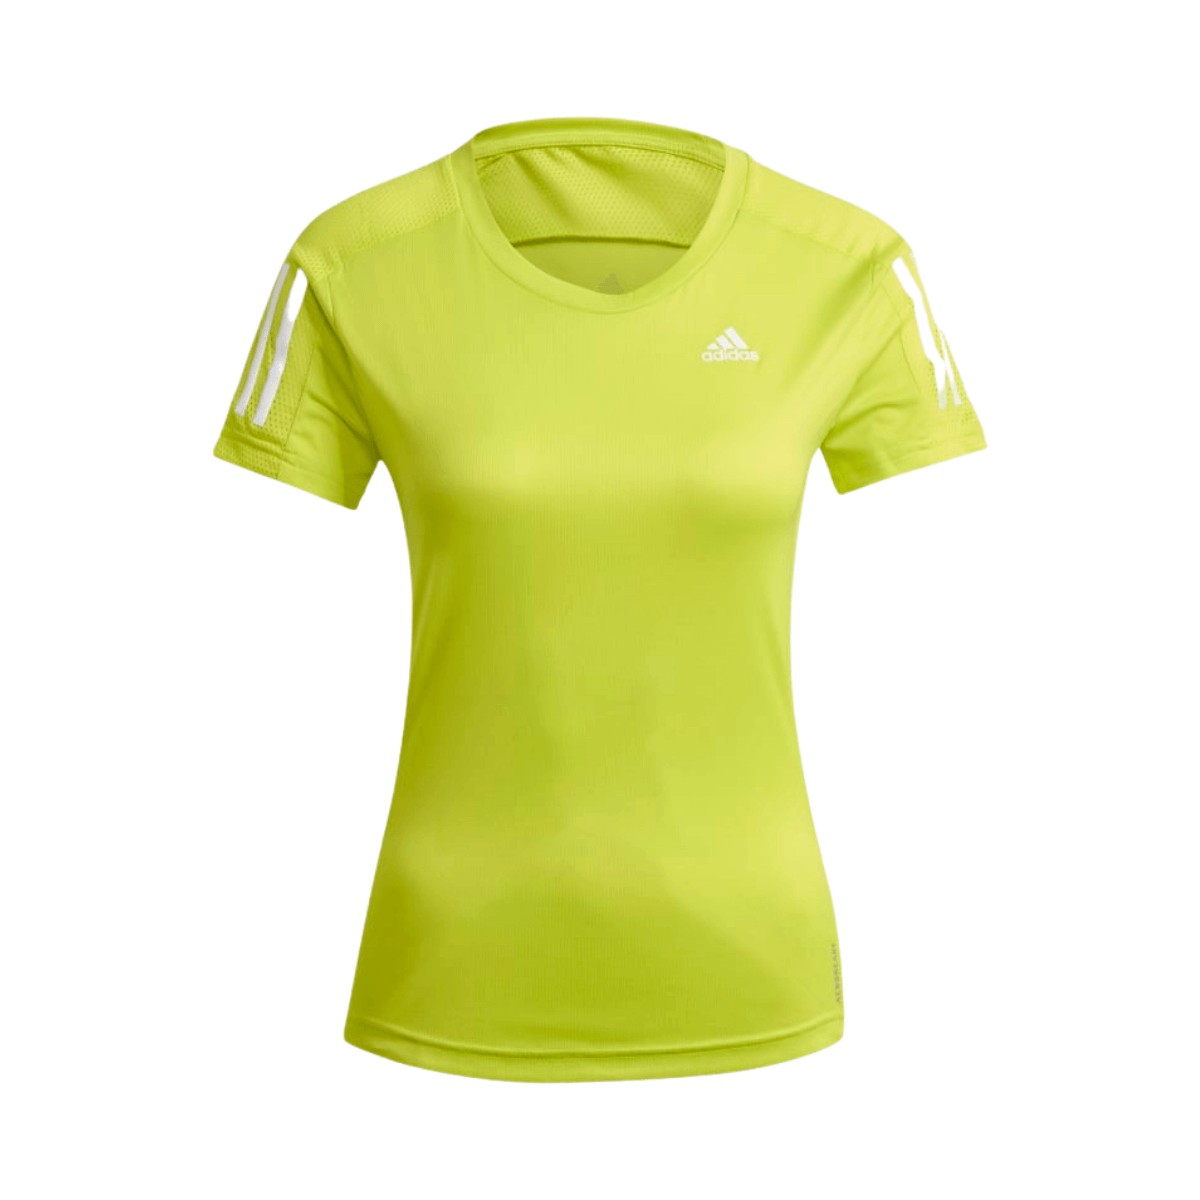 Característica líquido borracho Camiseta Adidas Own The Run Amarillo Mujer